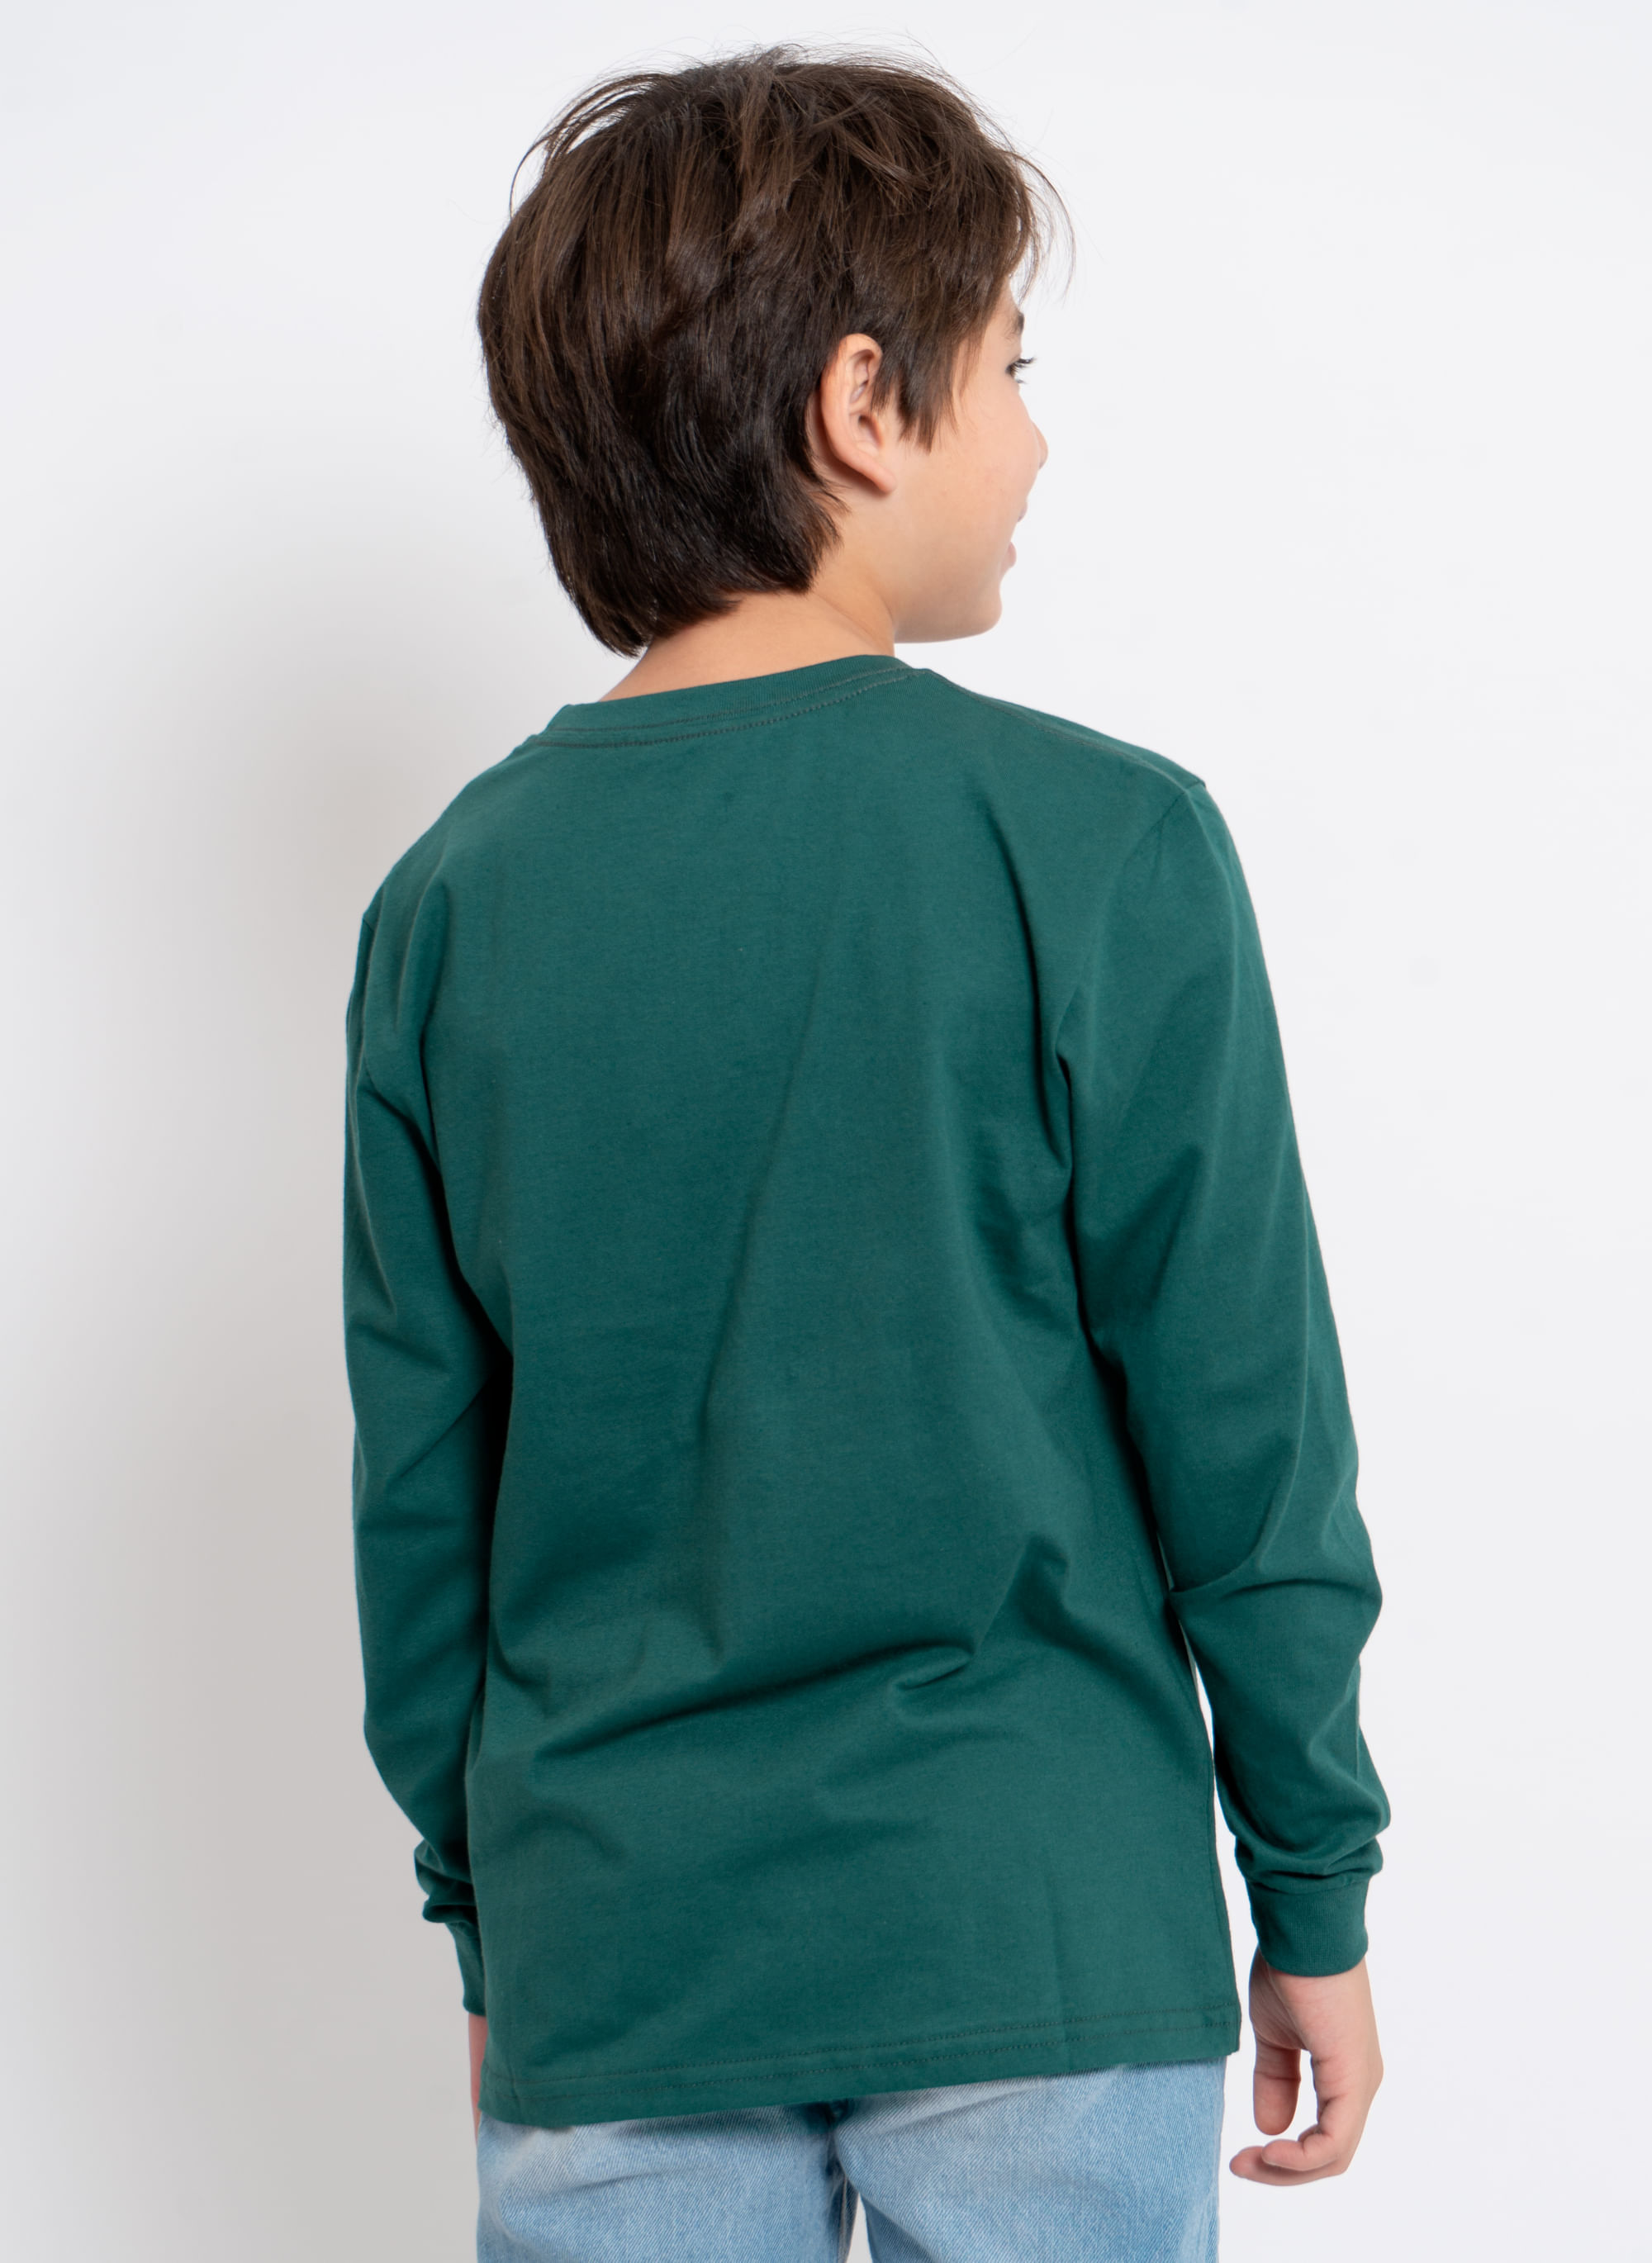 Camiseta-Aleatory-Infantil-Lisa-Manga-Longa-Freedom-Verde-Verde-4